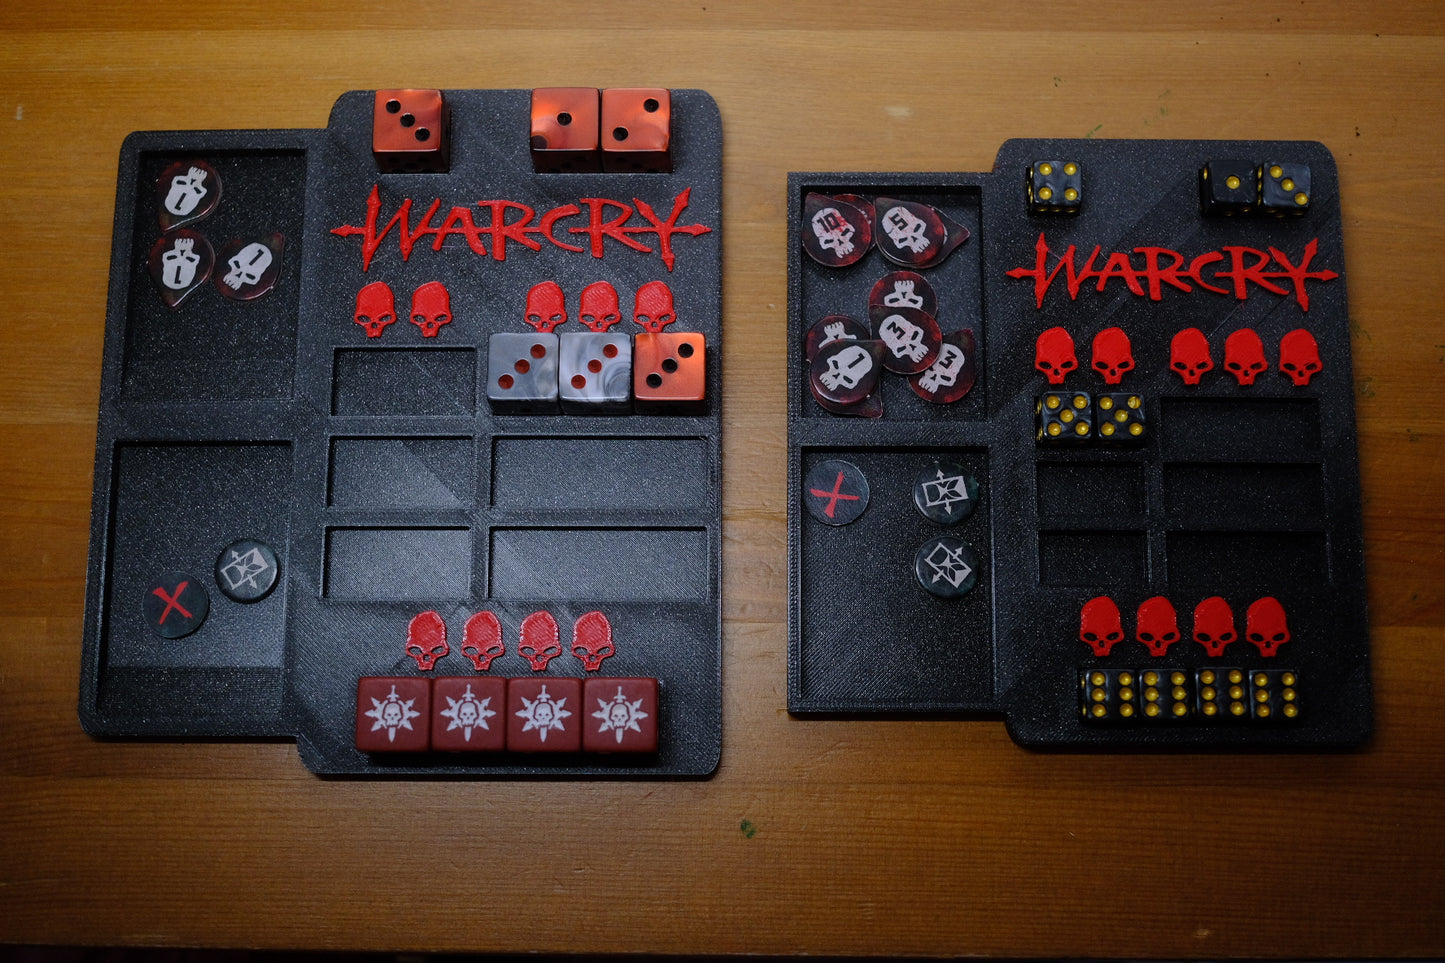 Warcry Panel de juego/ Dashboard para dados de Warcry 16mm o dados pequeños de 12mm